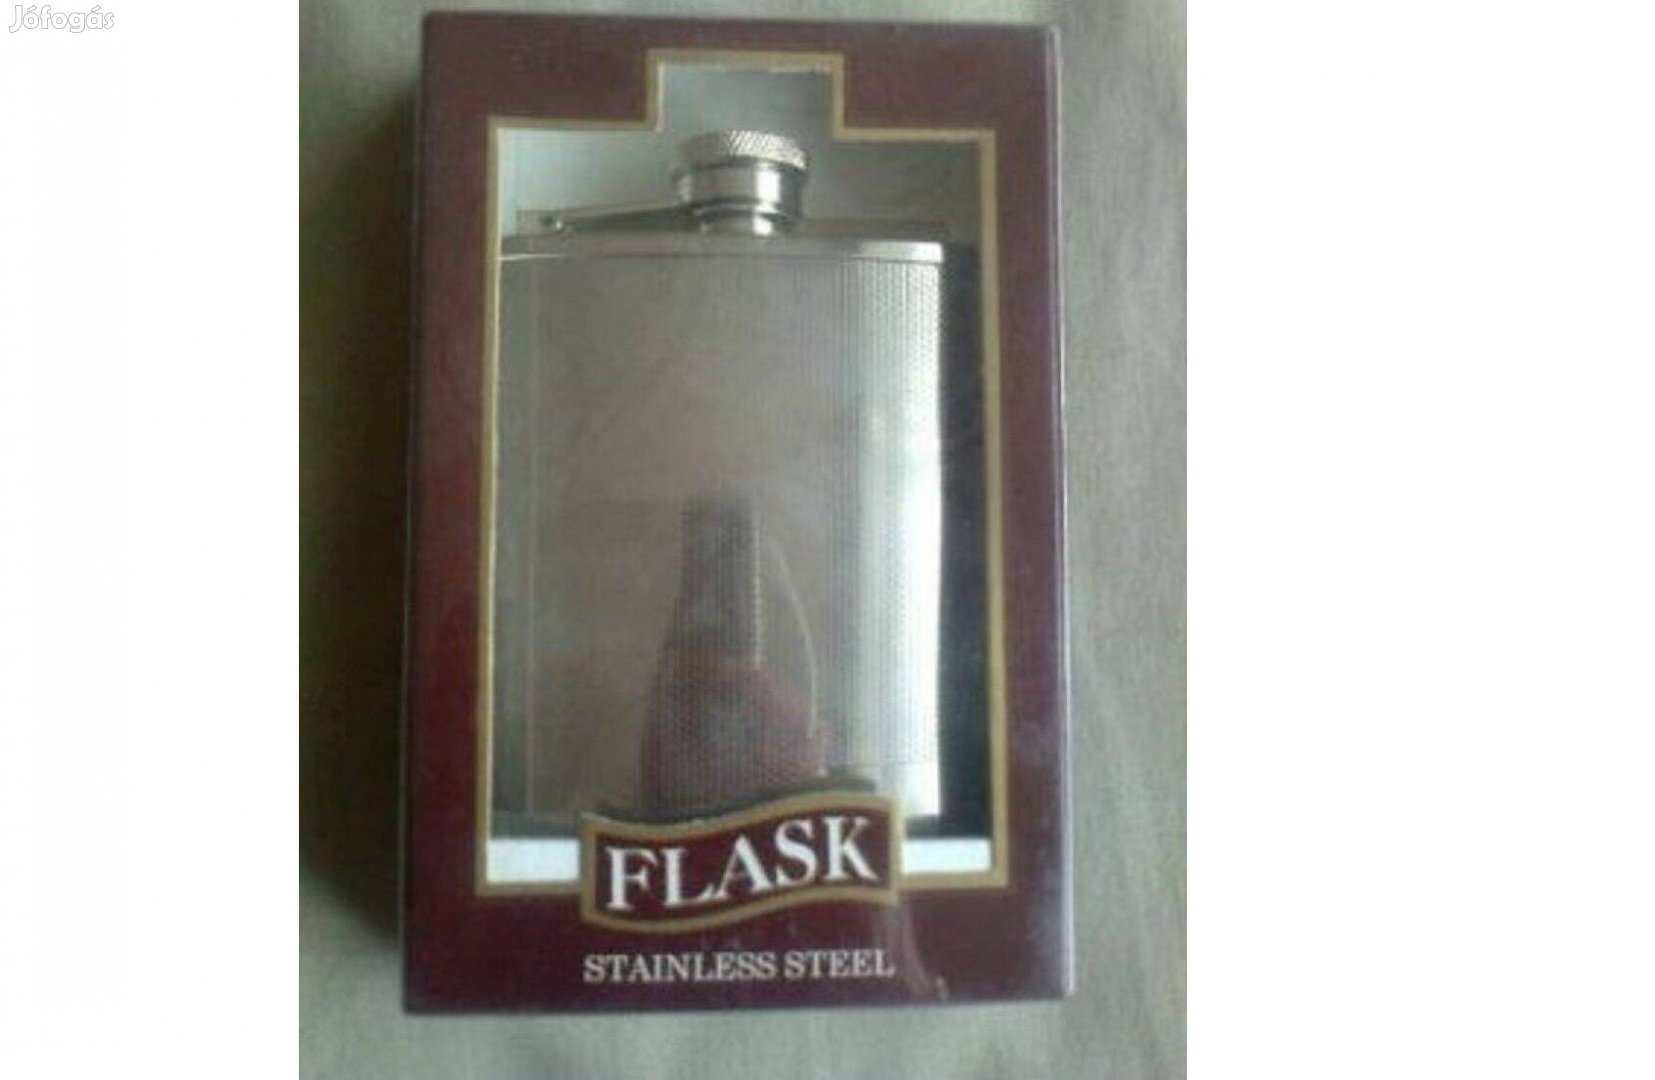 Flask Stainless Steel 6 OZ rozsdamentes fém flaska.Teljesen új,tiszta